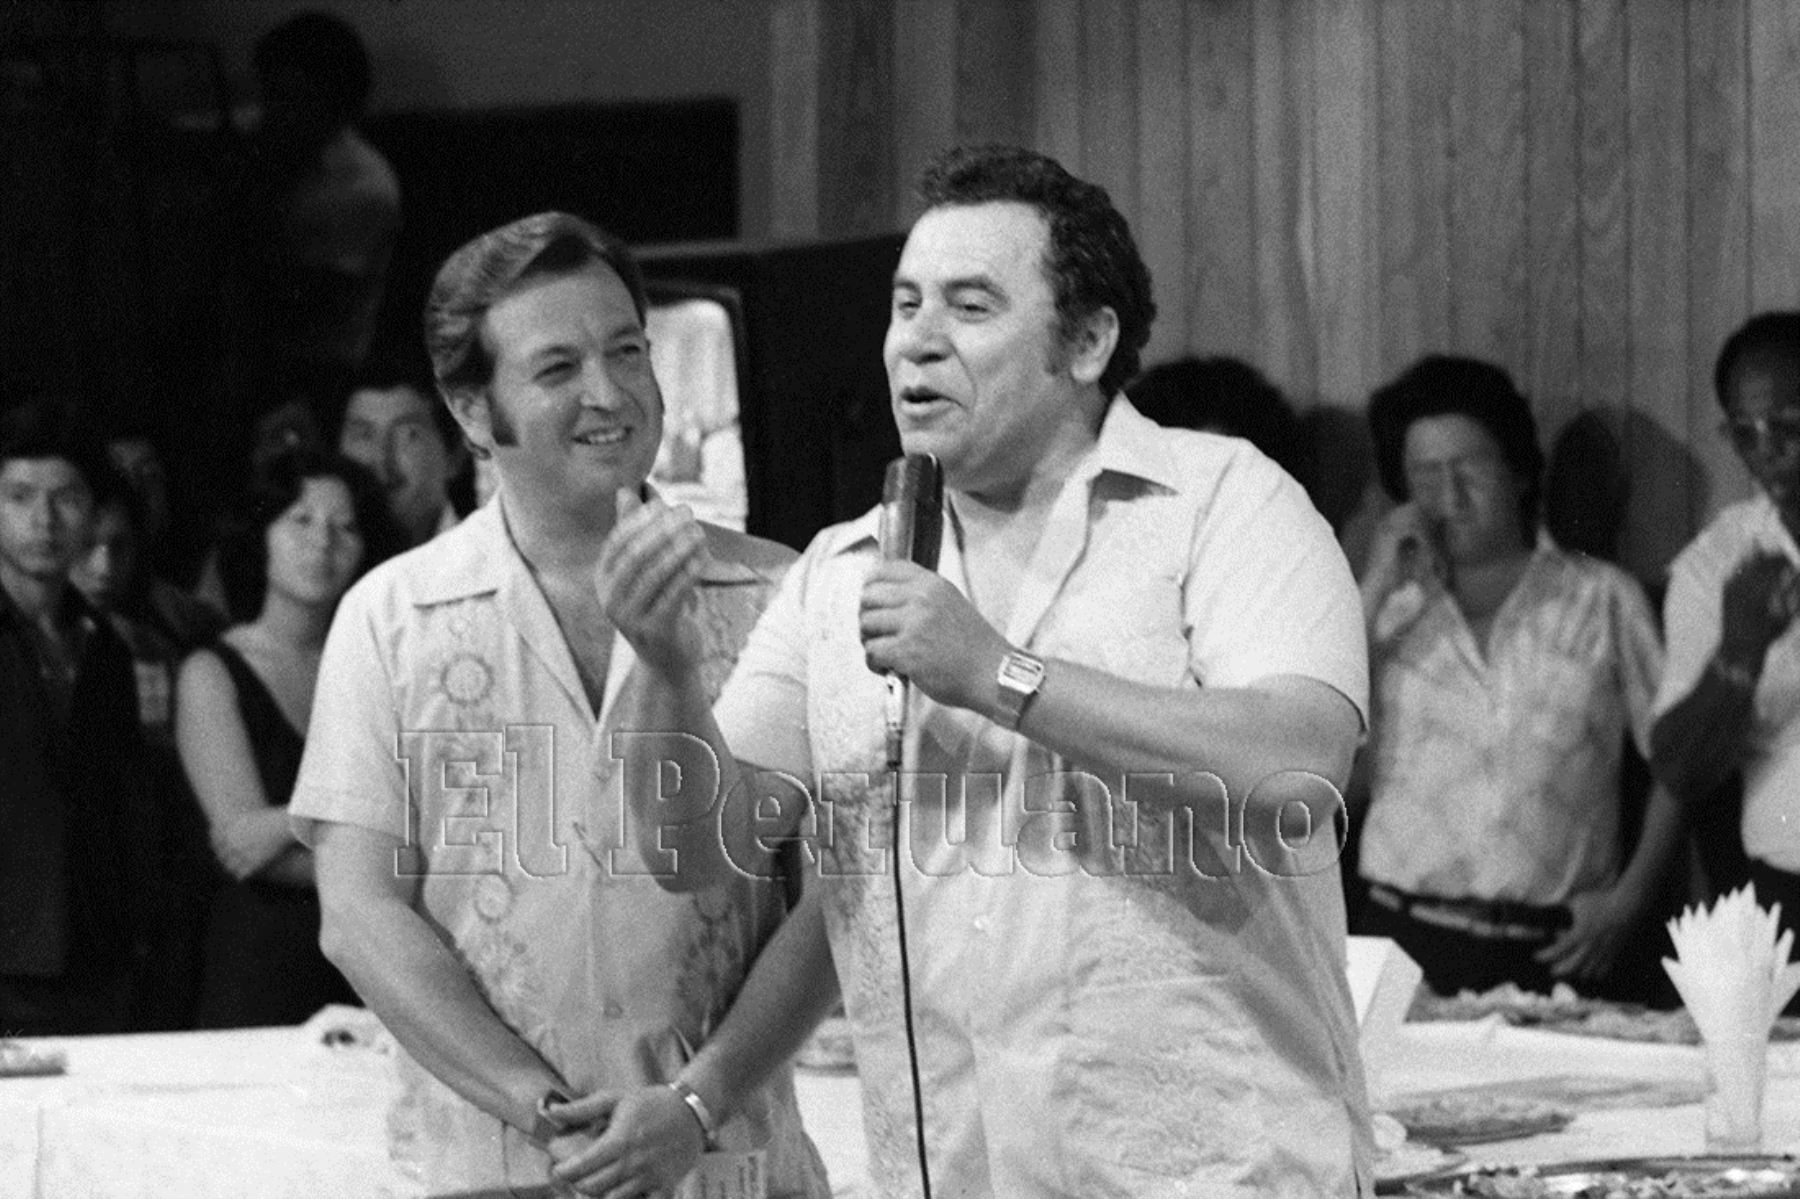 Lima - 12 abril 1980 / El compositor Augusto Polo Campos participó en el programa especial por el aniversario del programa "Primicias Deportivas" que conducen Rulito Pinasco y Roberto Salinas.